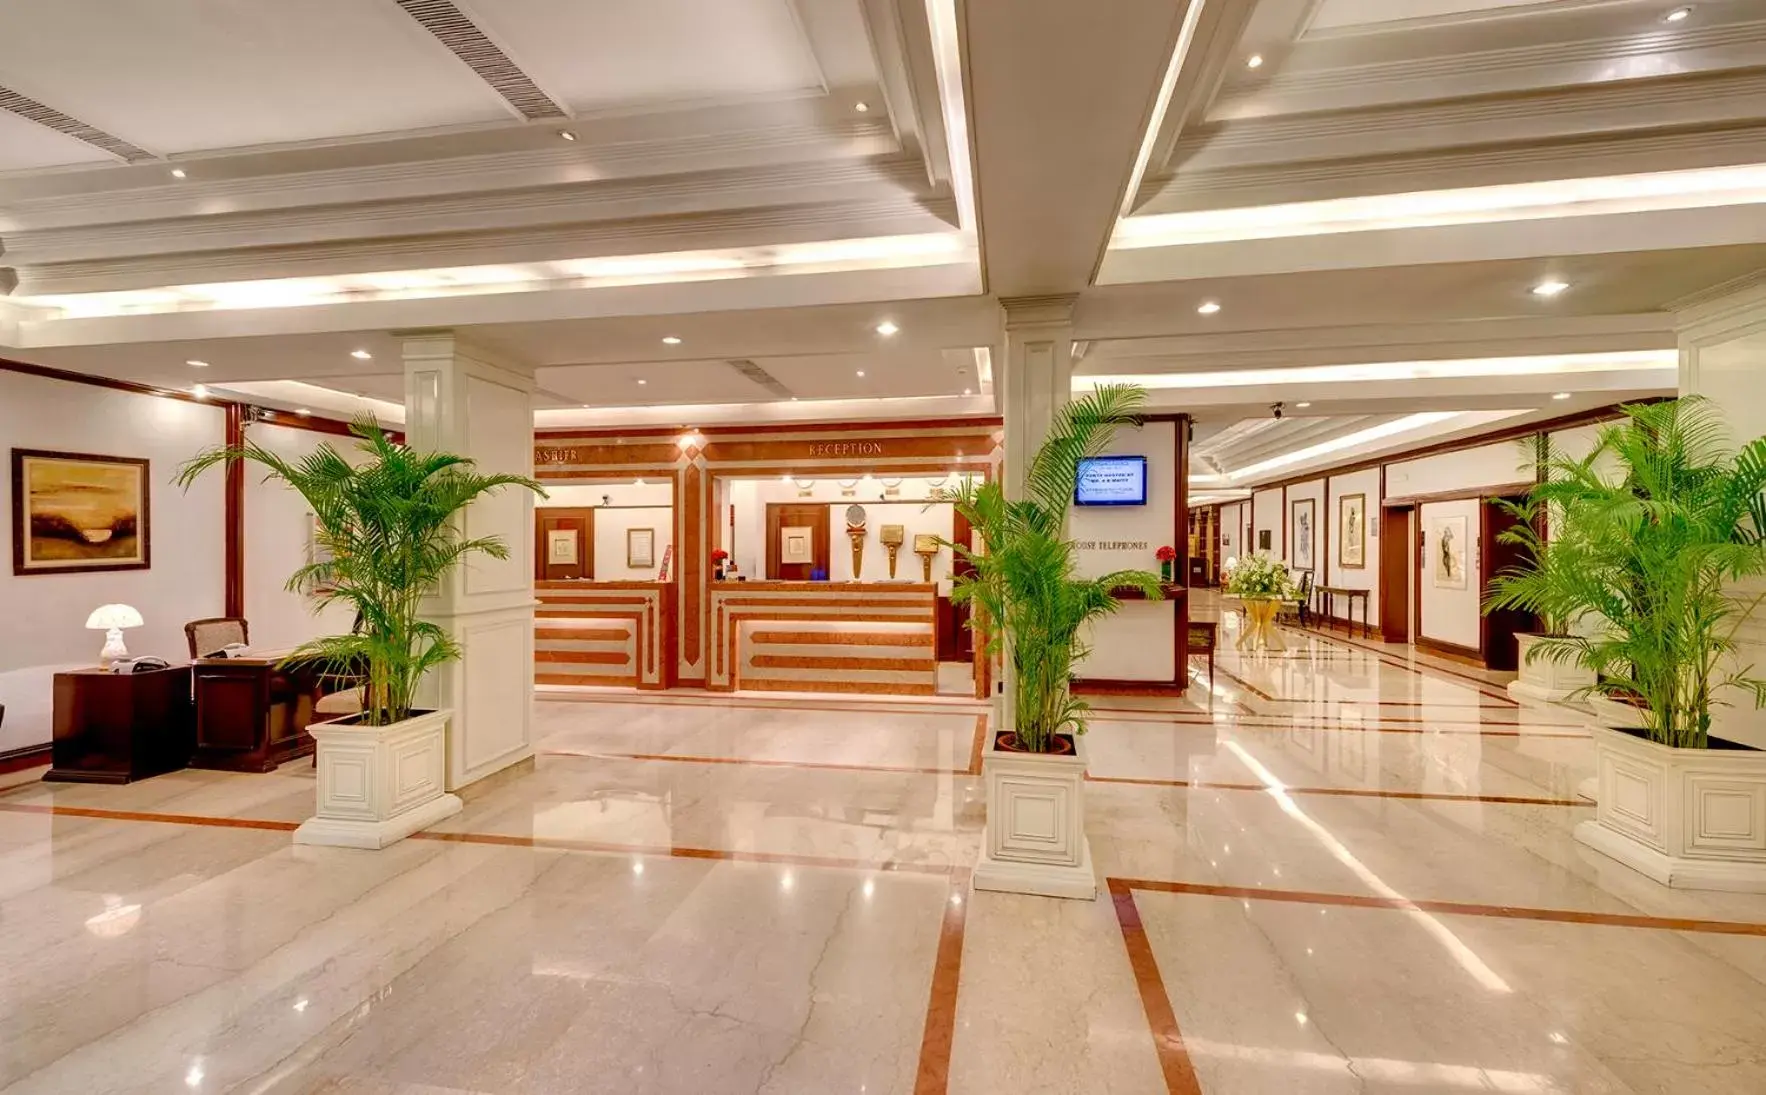 Lobby or reception, Lobby/Reception in Hotel Hindustan International